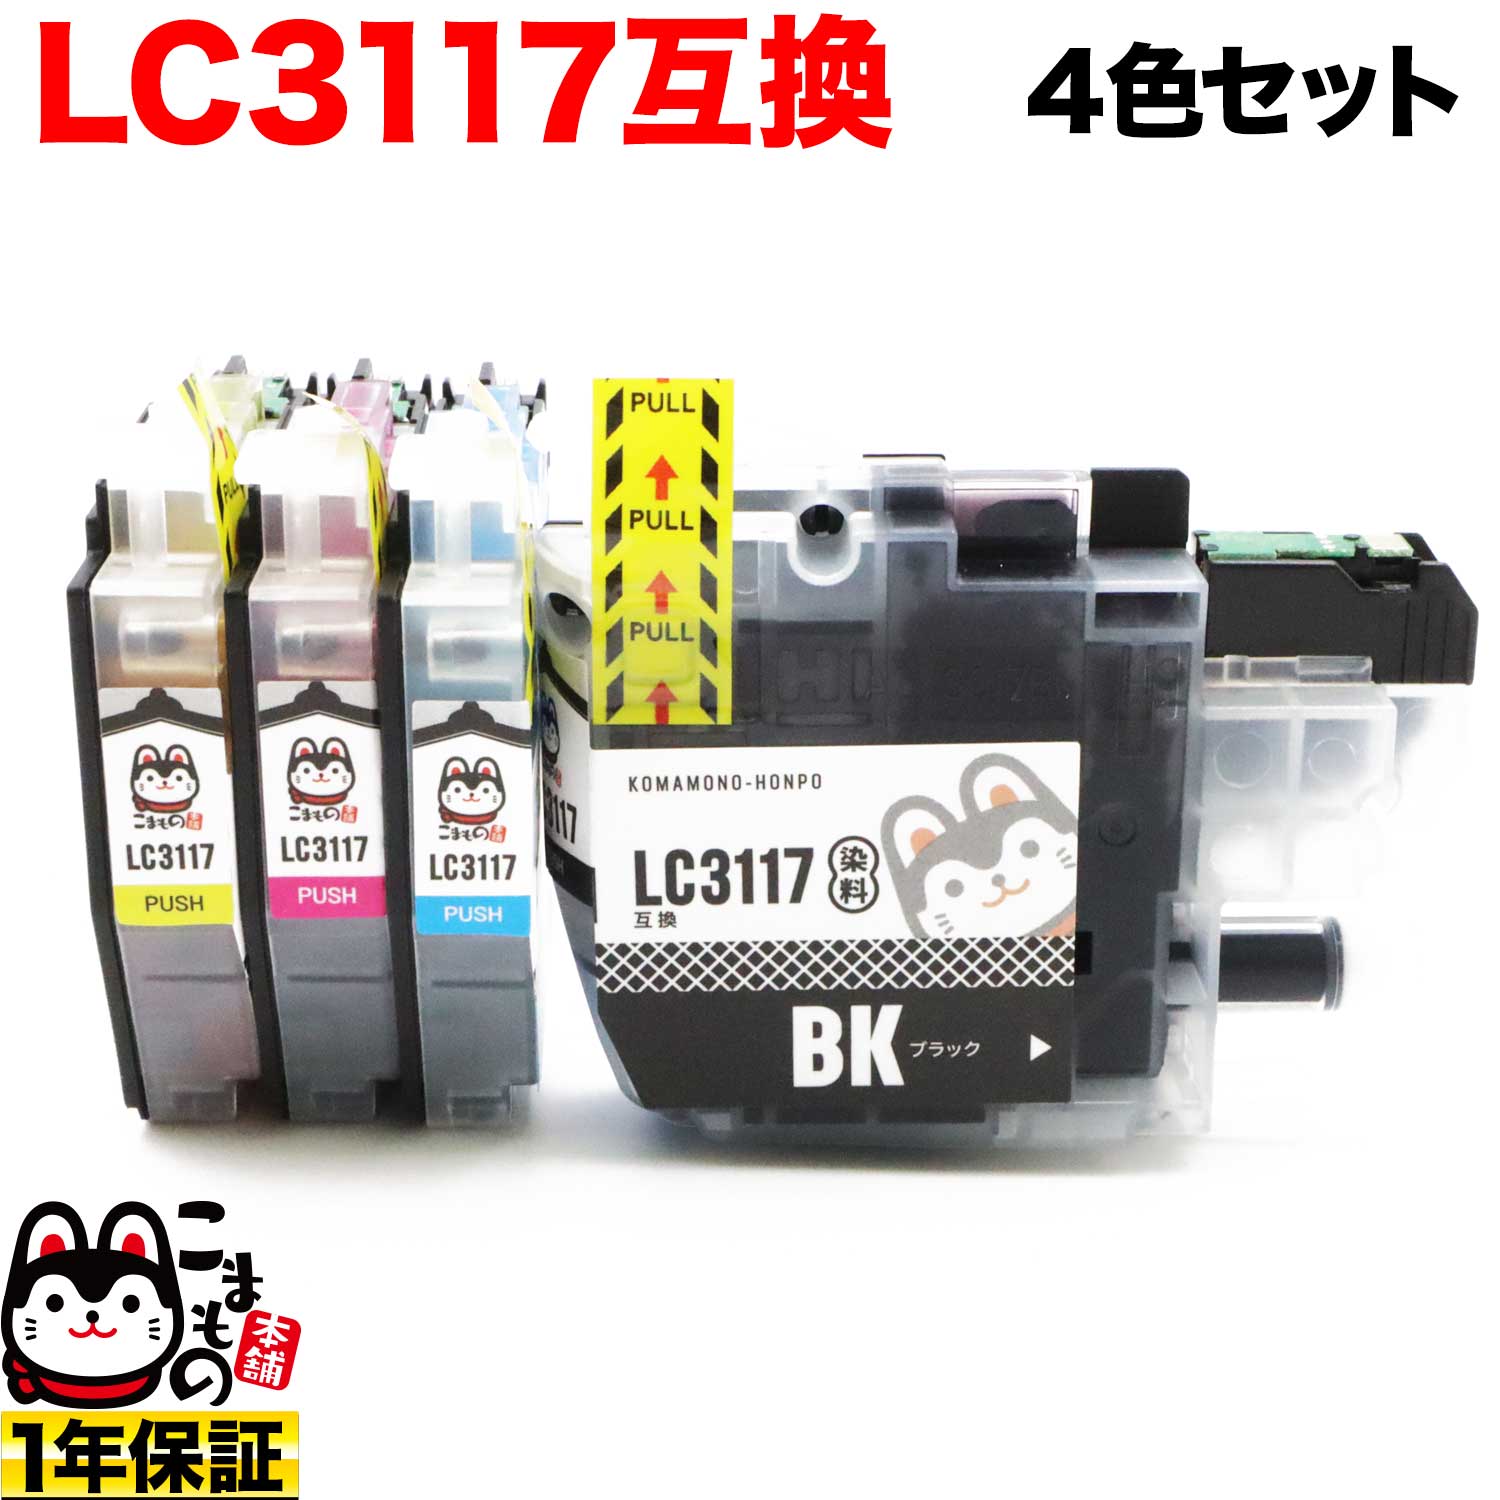 LC3117-4PK ブラザー用 LC3117 互換インクカートリッジ 4色セット【メール便送料無料】 4色セット ブラザー工業  LC3117互換インクカートリッジ